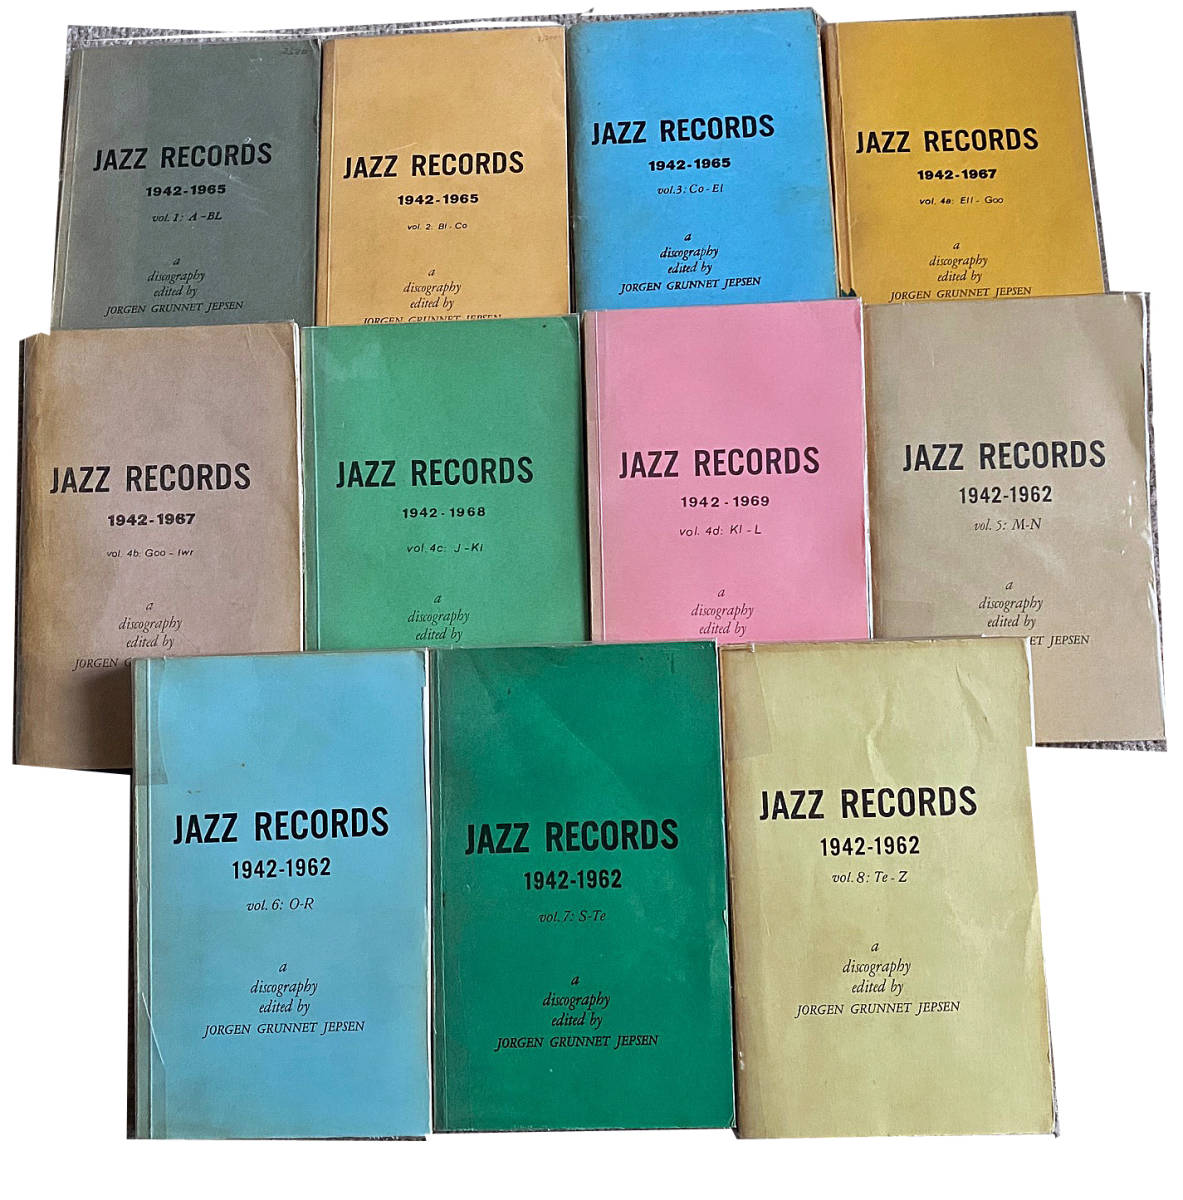 気質アップ JAZZ RECORDS 1942-1962,1965,1967 A DISOGRAPHY edited by